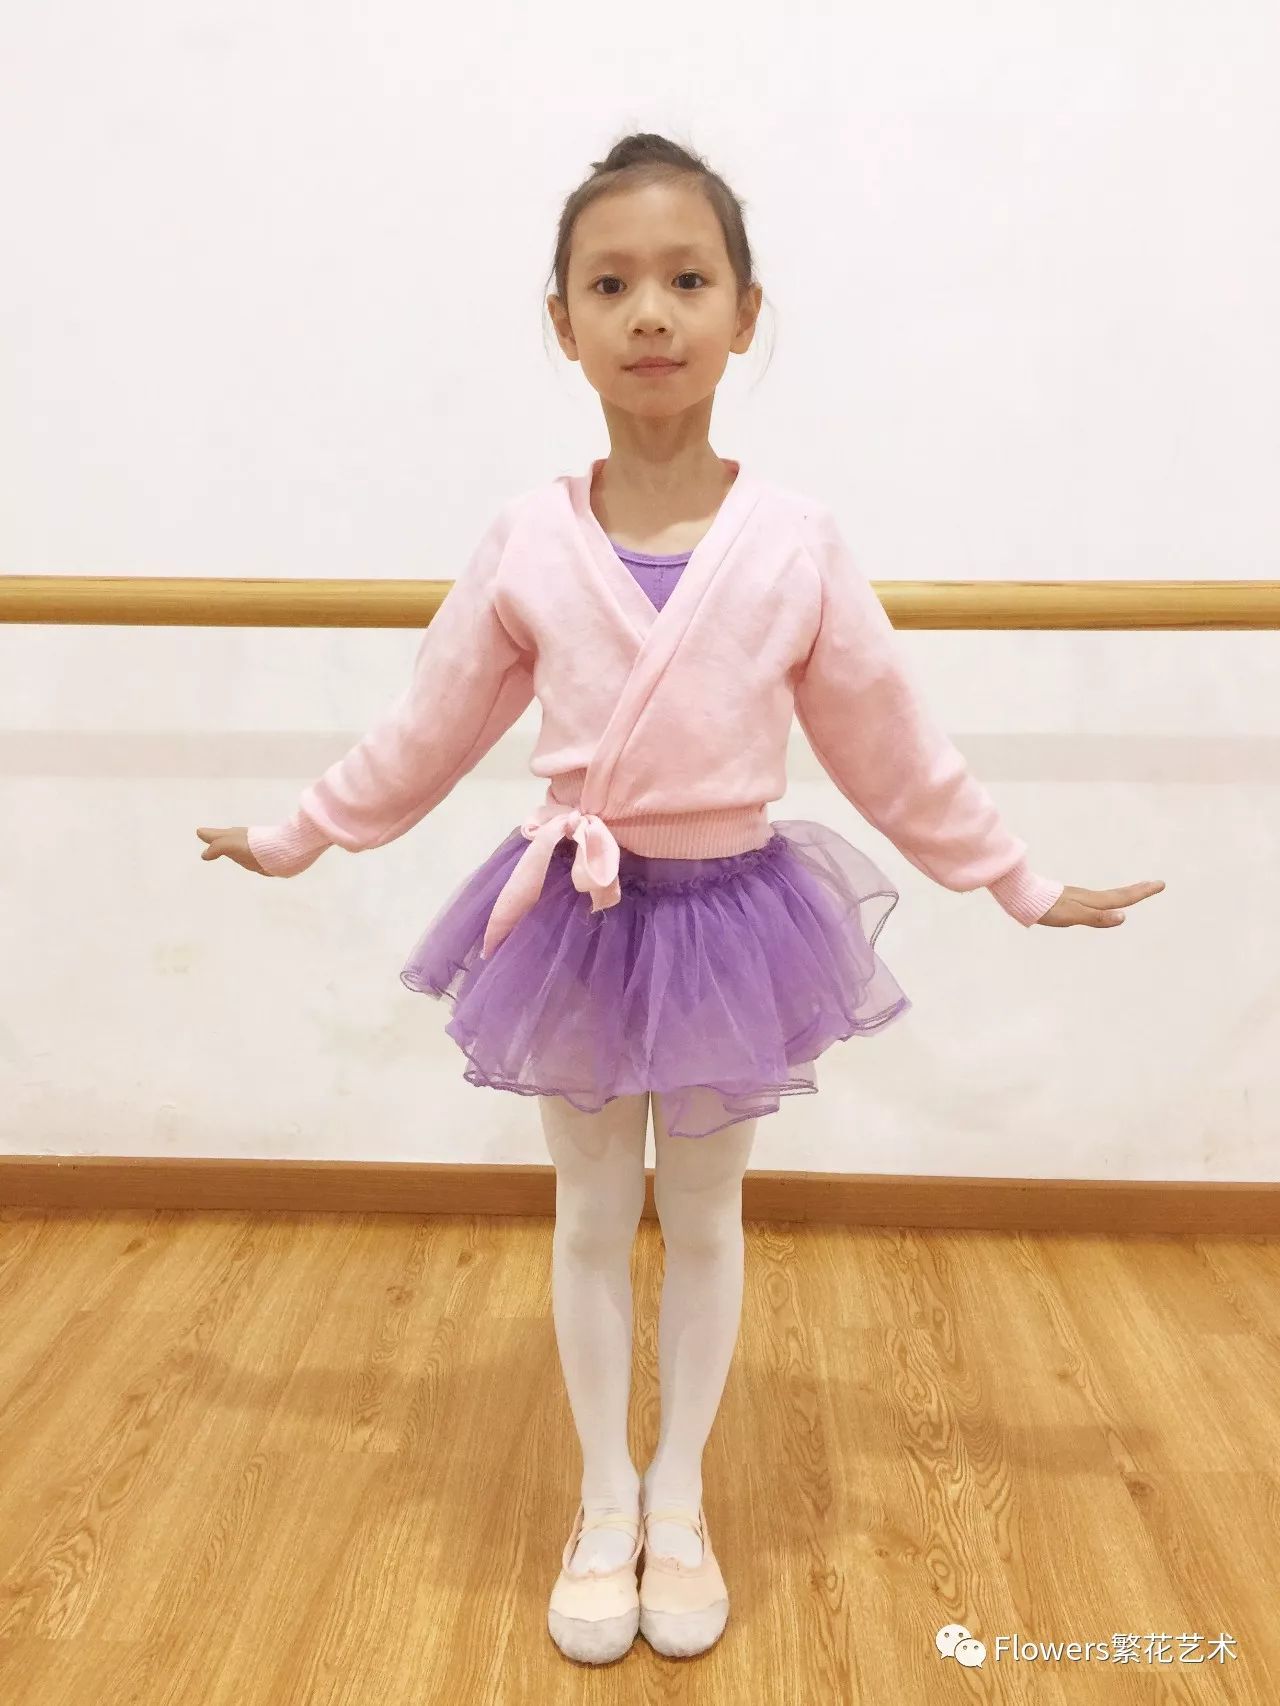 考试前40分钟到考场报到;考级要求:2018年北京舞蹈学院中国舞考级地点